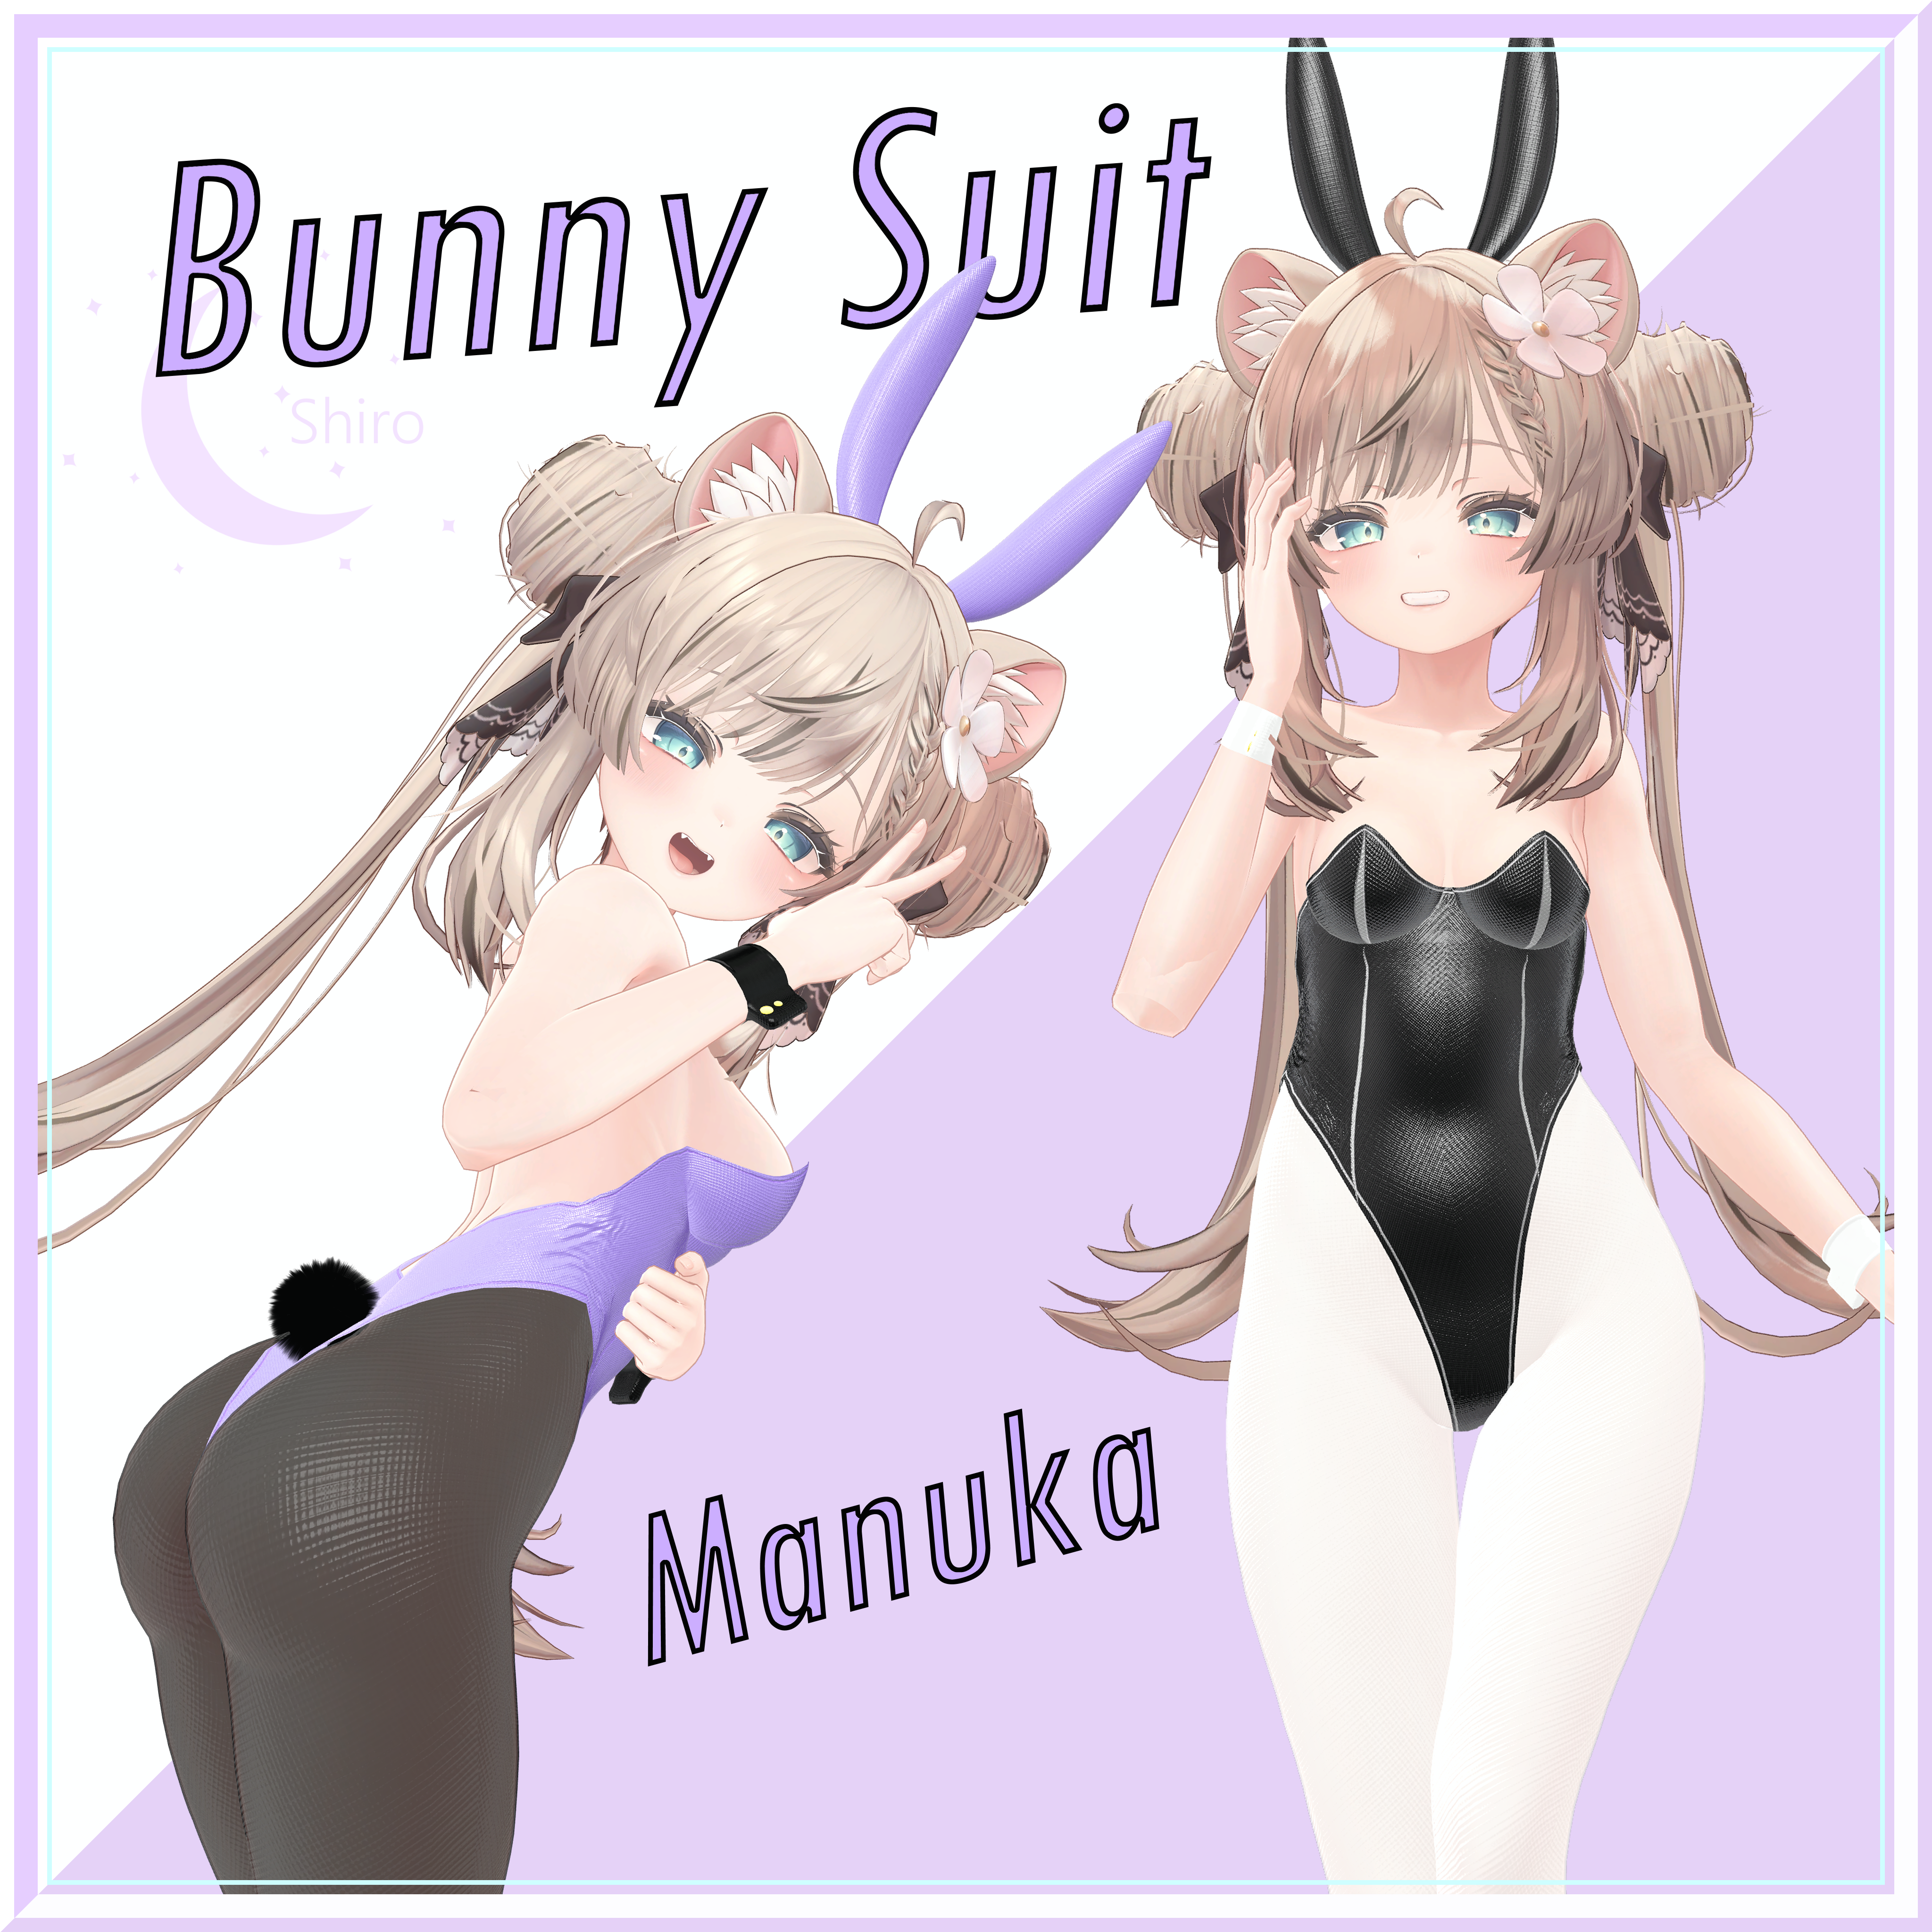 マヌカちゃんのバニースーツ Manuka Bunny Suit